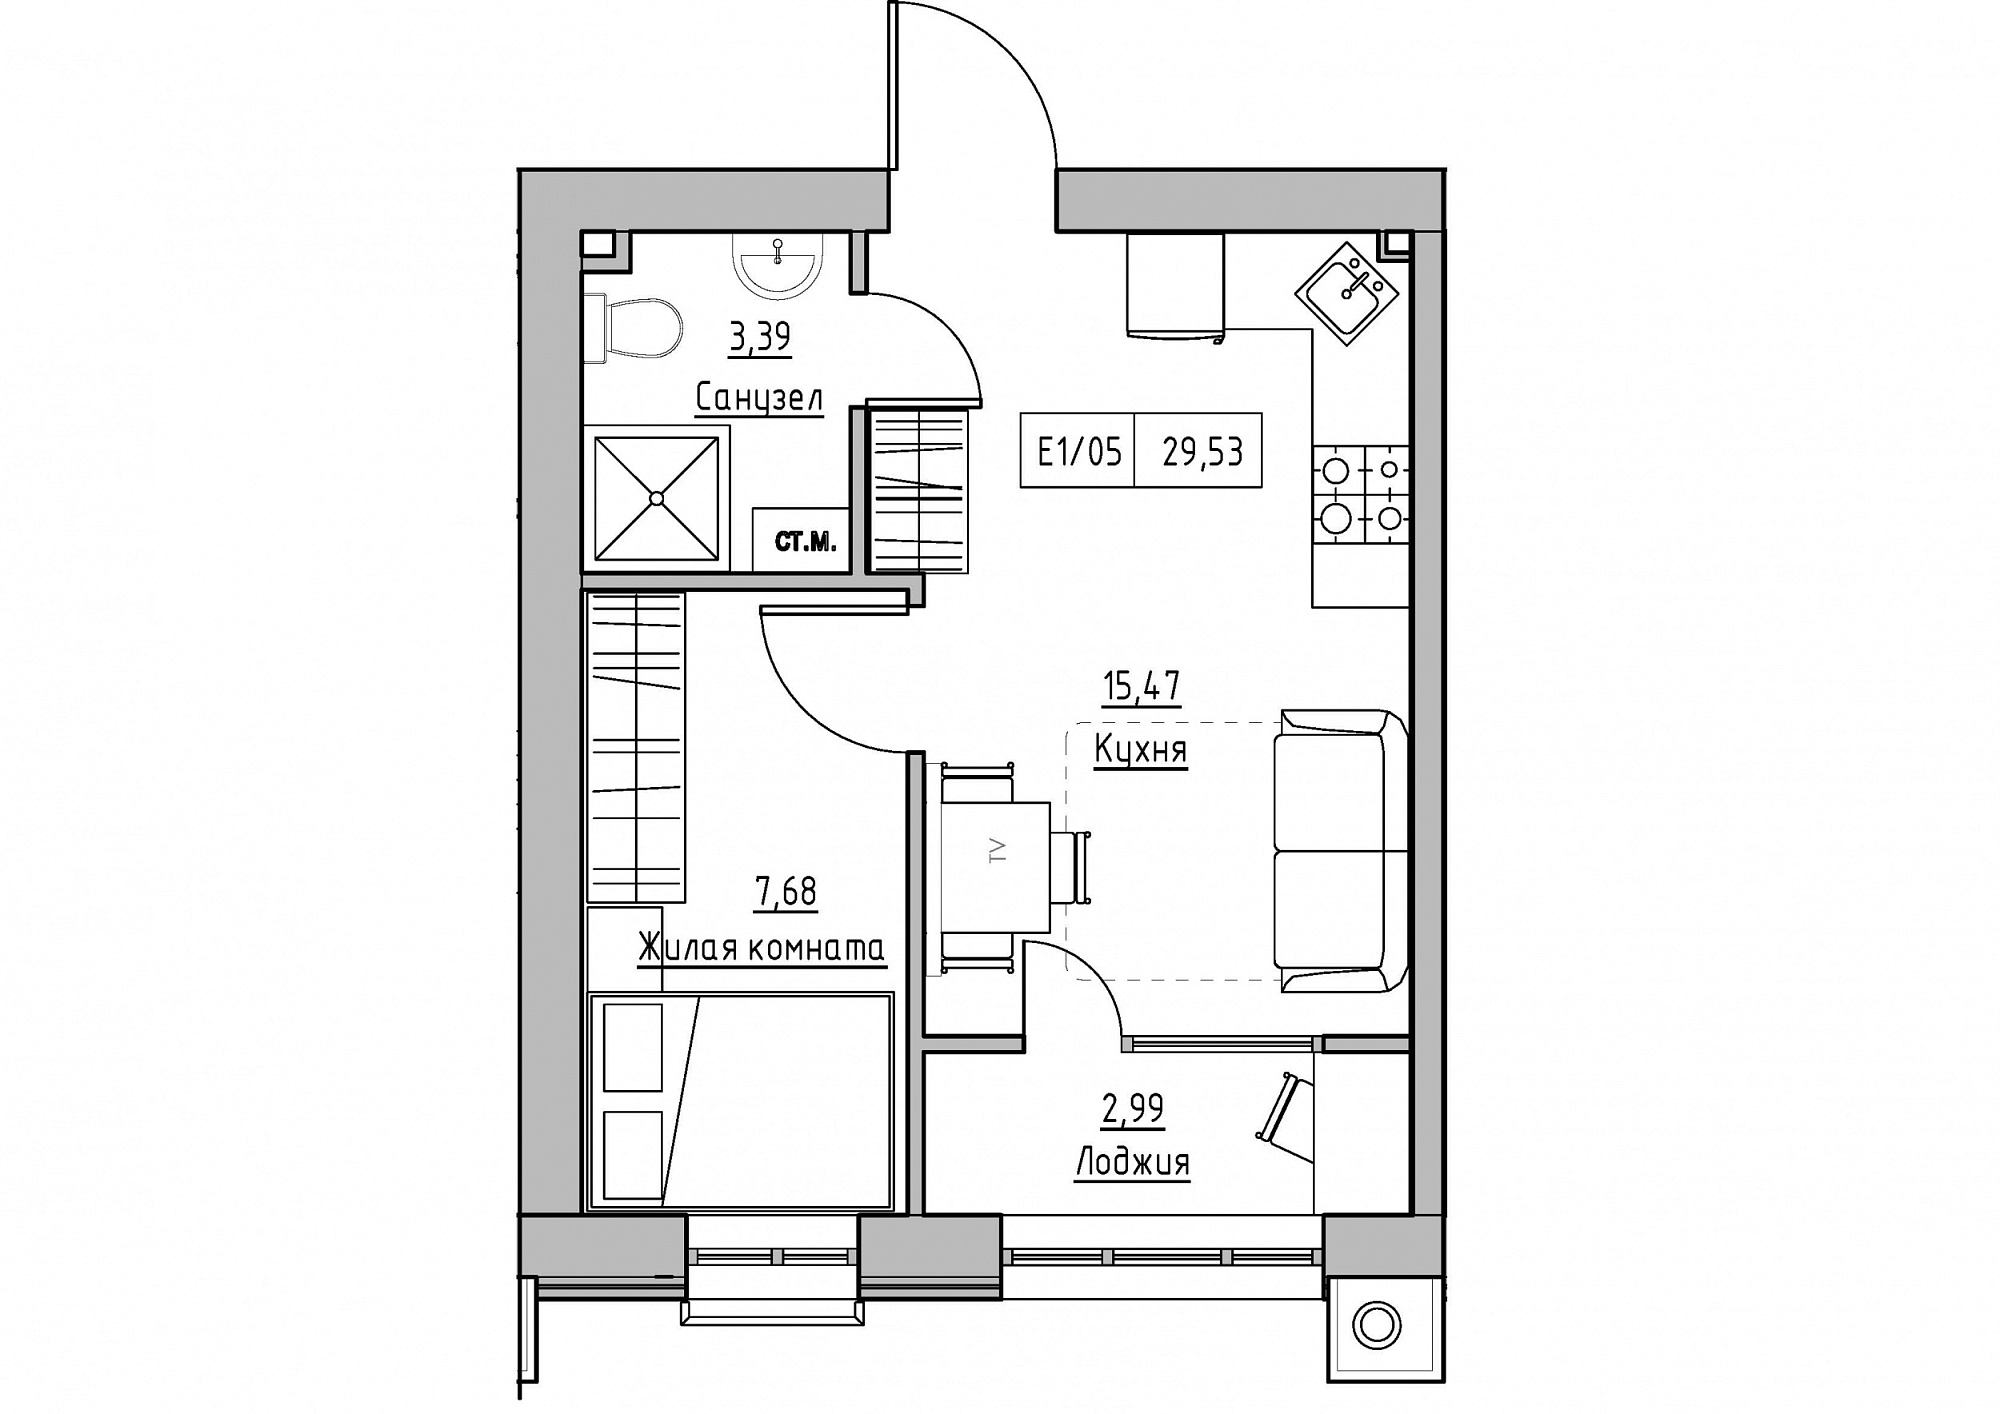 Планировка 1-к квартира площей 29.53м2, KS-011-02/0010.